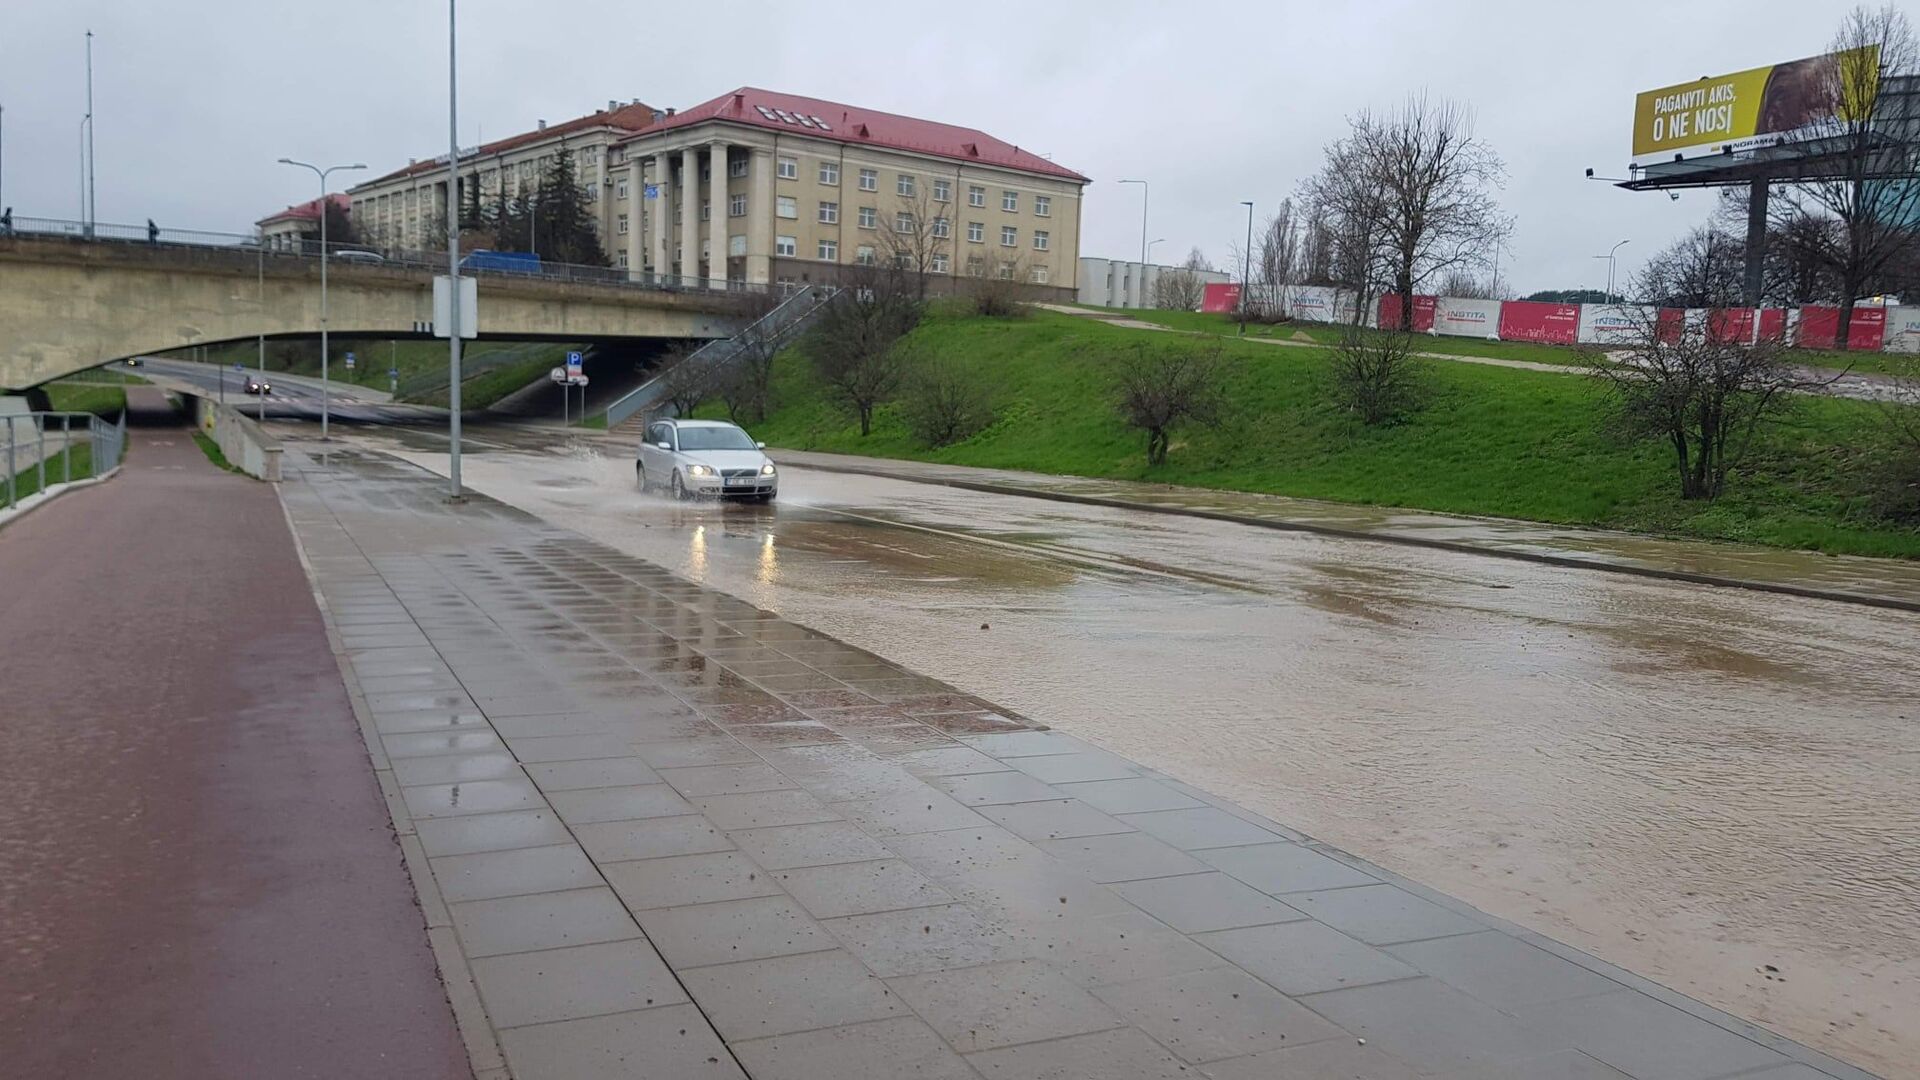 Улицу Упес в Вильнюсе залило водой из-за аварии с водопроводом, 23 апреля 2021 года - Sputnik Lietuva, 1920, 12.05.2021